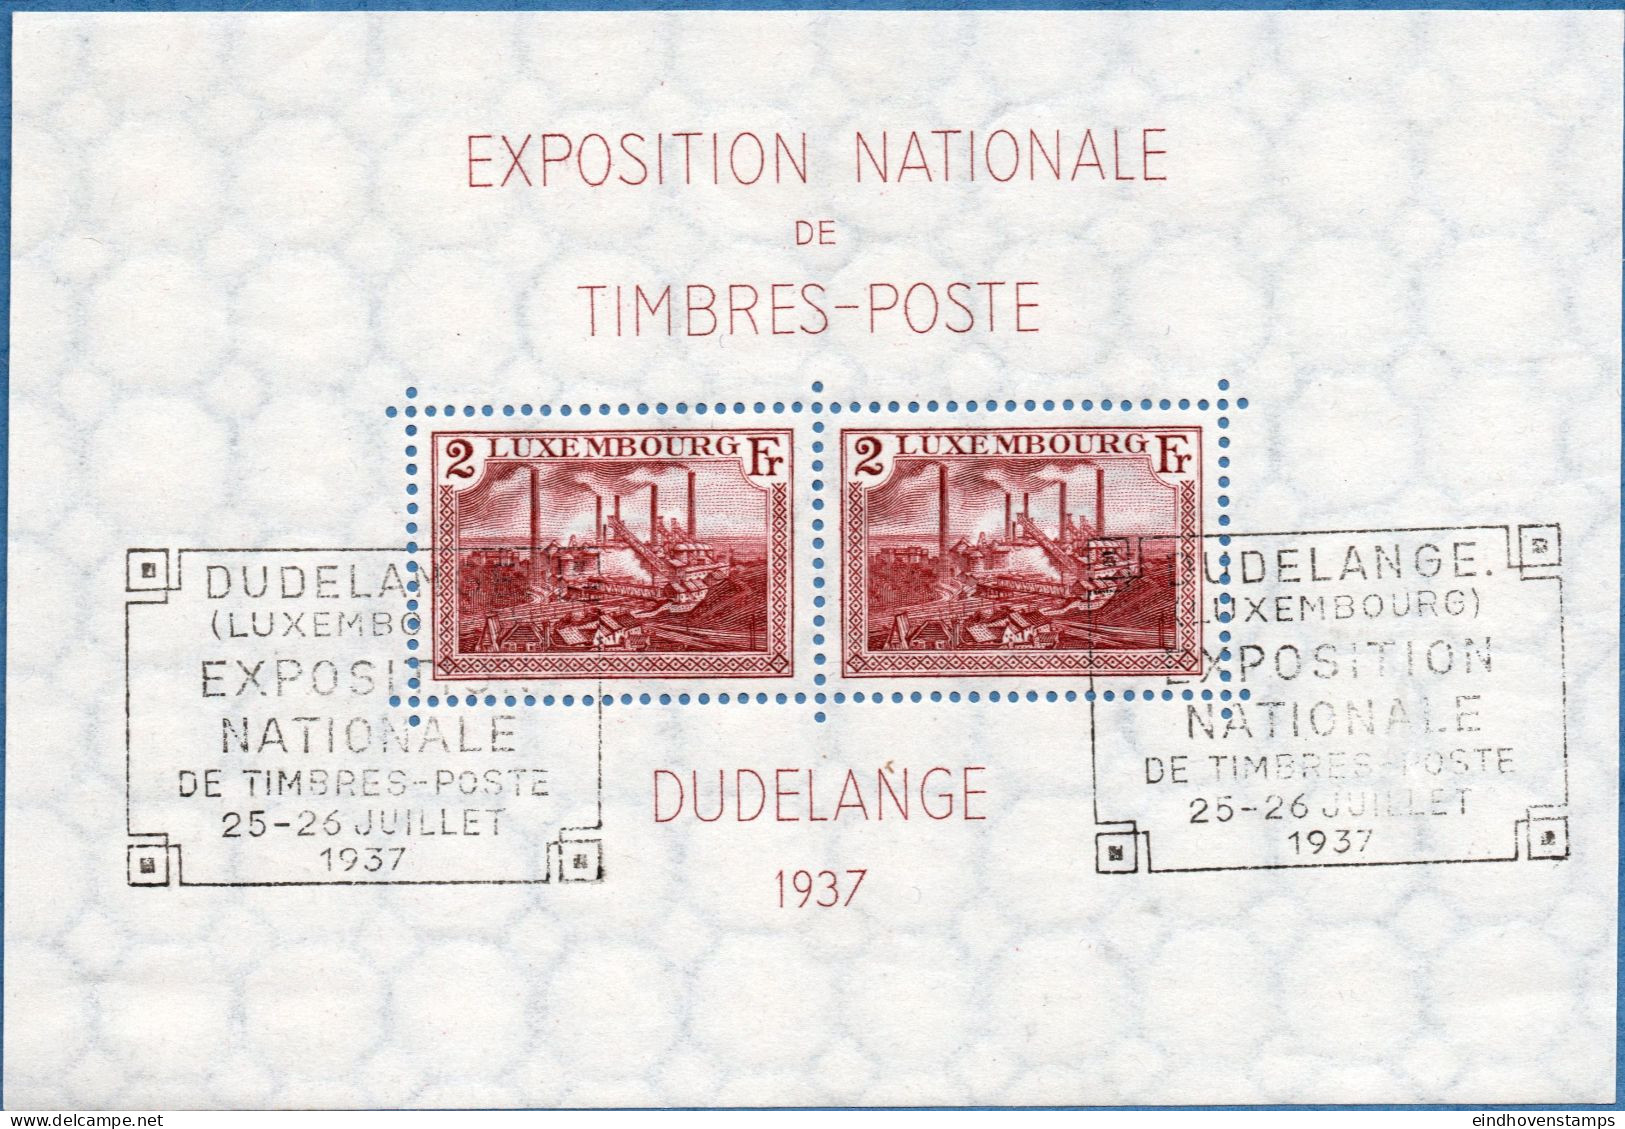 Luxemburg 1937 Düdelingen Exhibition Block Issue Exhibition Cancel, Furnaces At Esch Zur Alzette - Unused Stamps